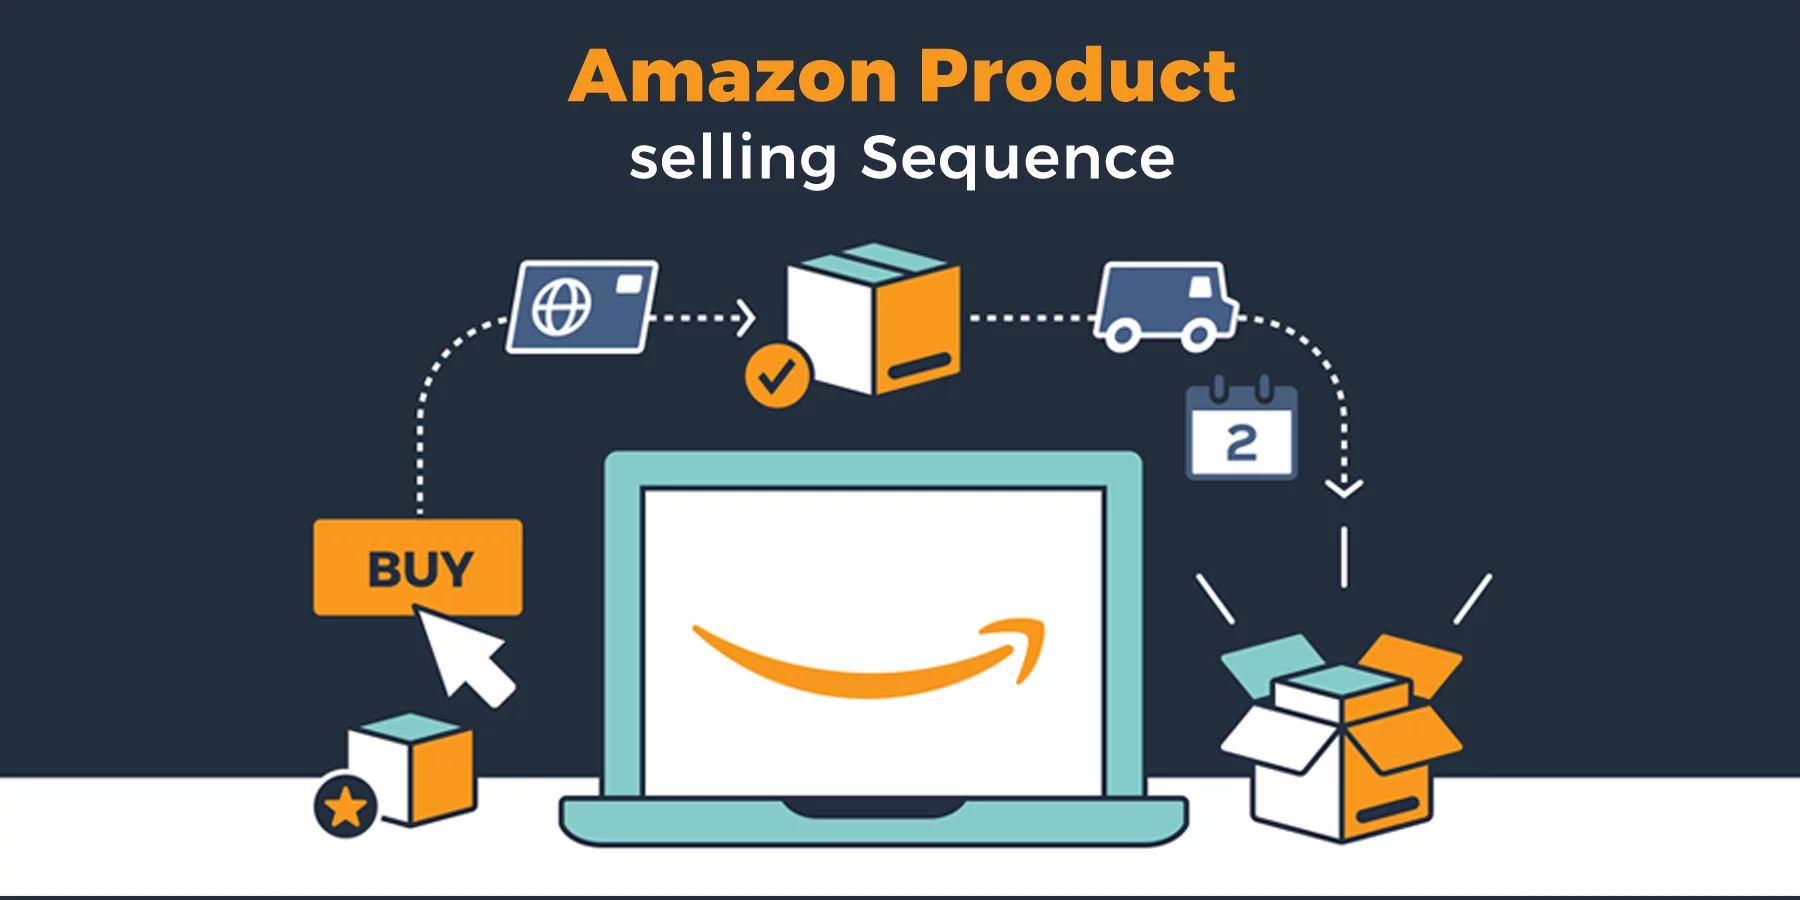 Amazon selling